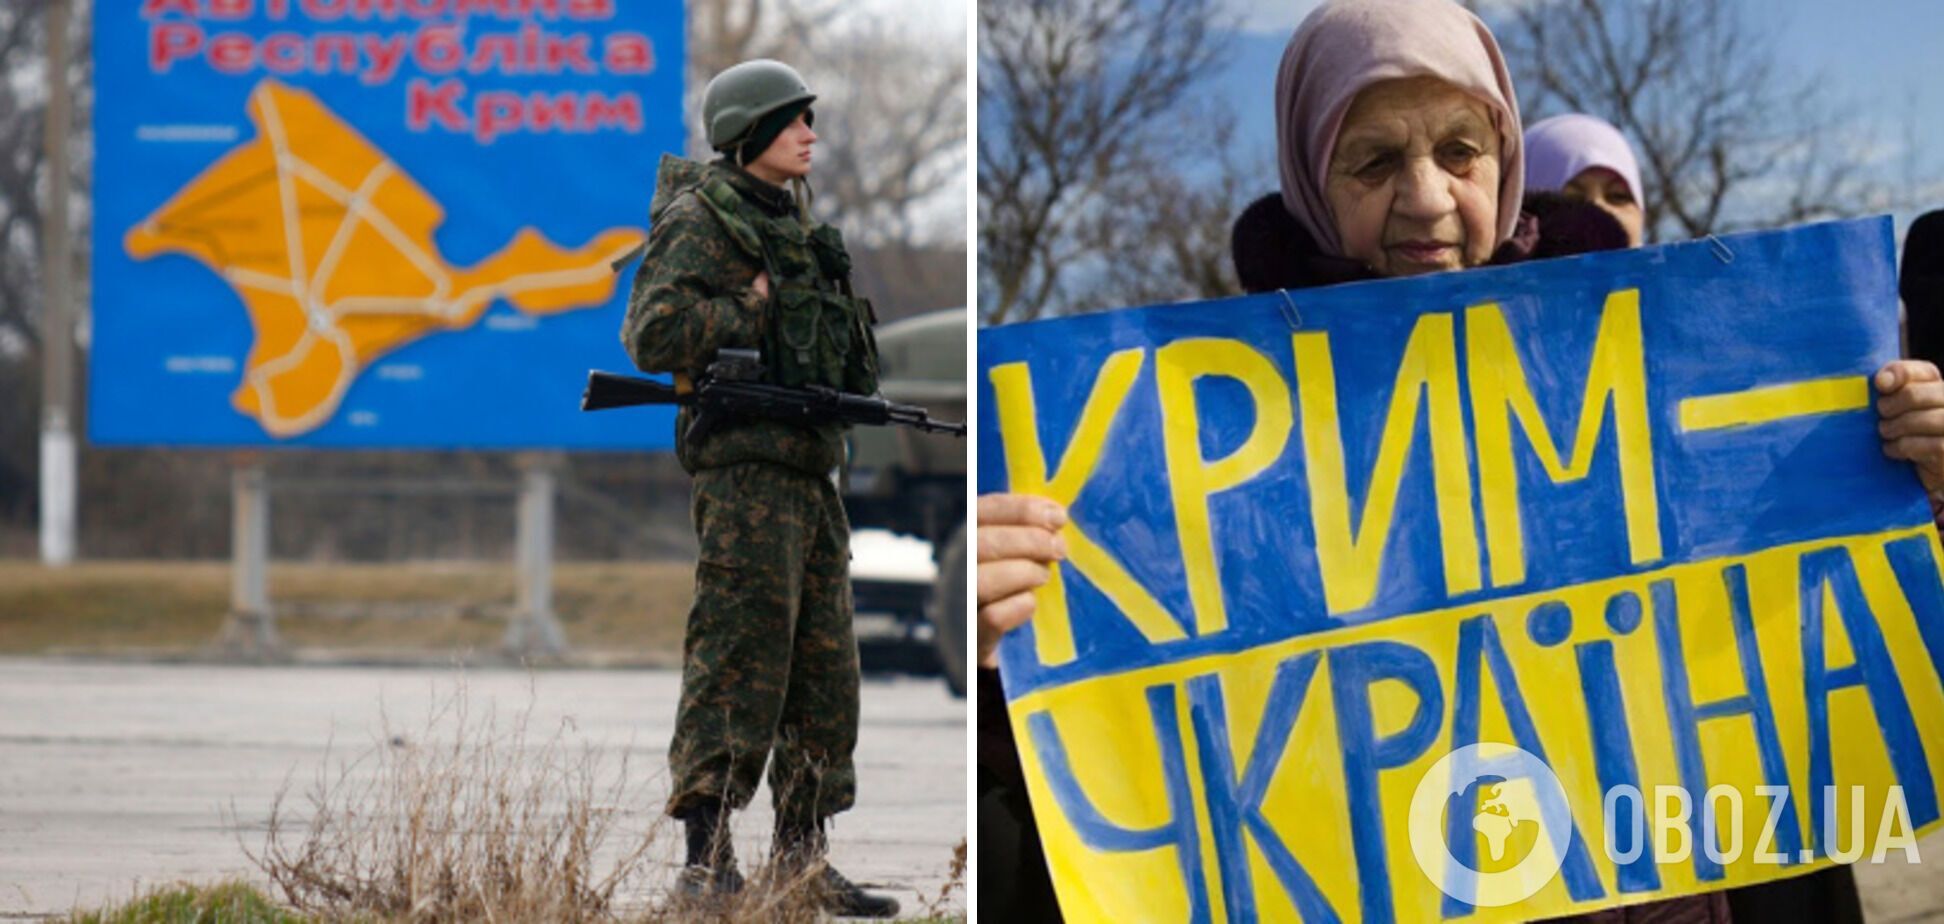 'Очень ждут освобождения': в ГУР рассказали о настроениях в оккупированном Крыму